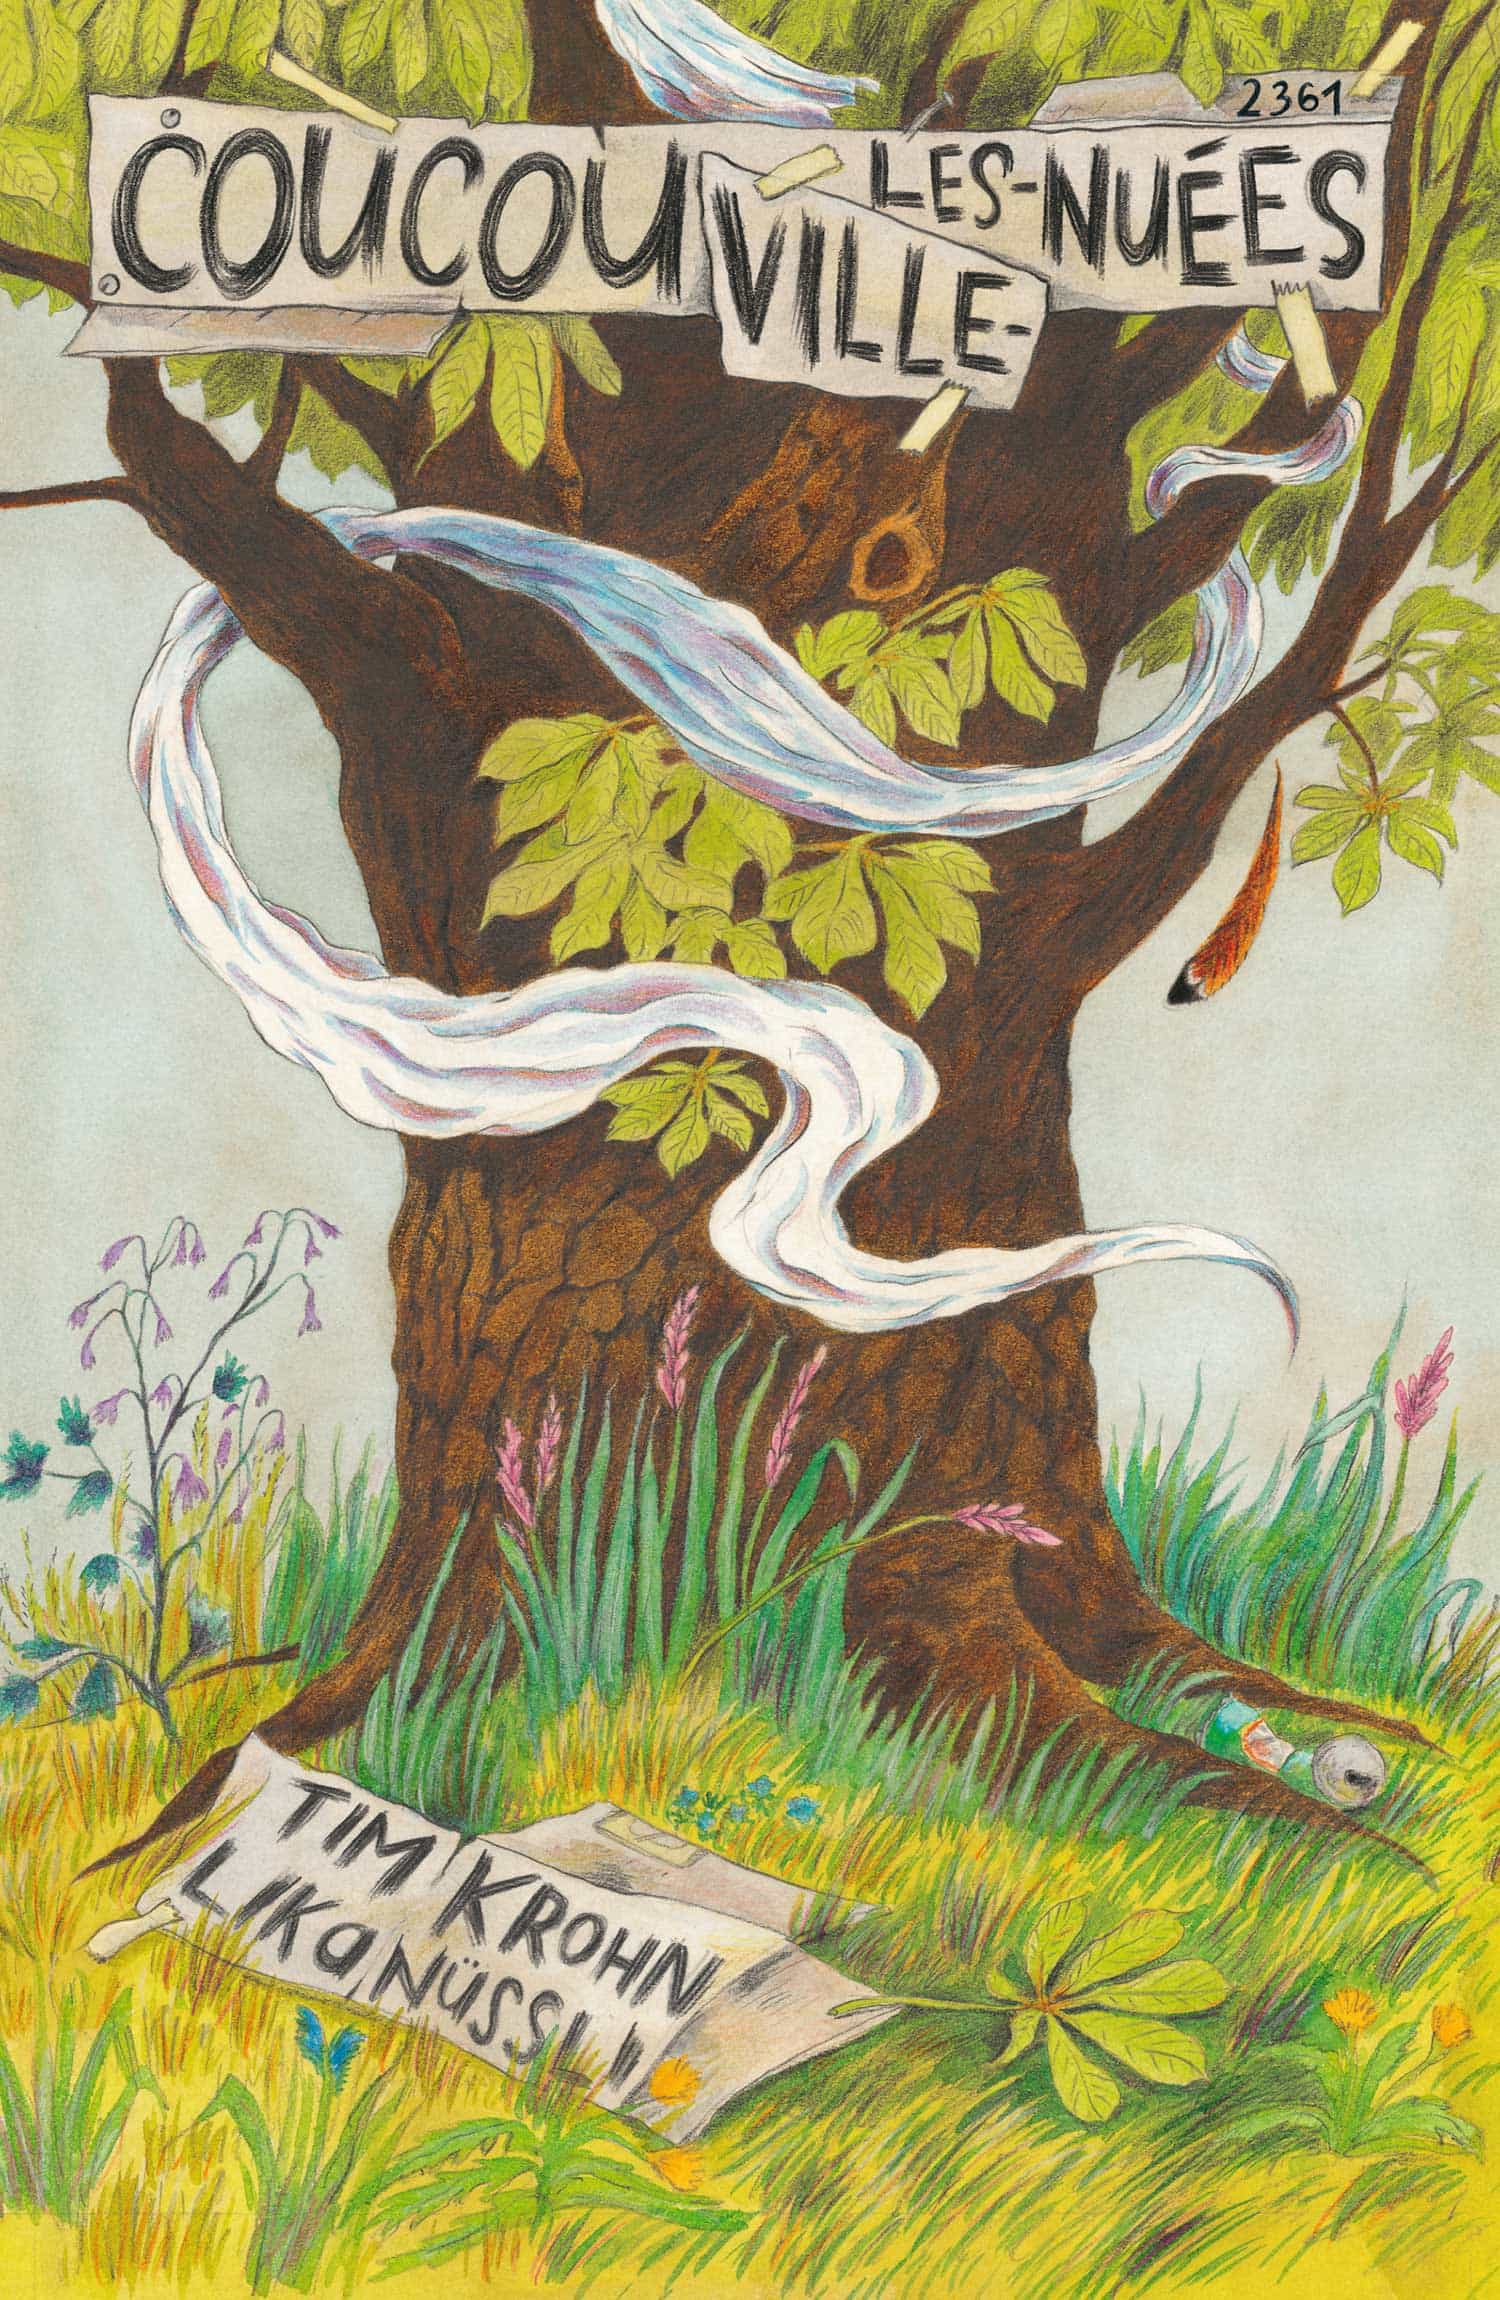 Coucouville-les-Nuées, un livre pour enfants de Tim Krohn, illustré par Lika Nuessli, éditions de l'OSL, nature